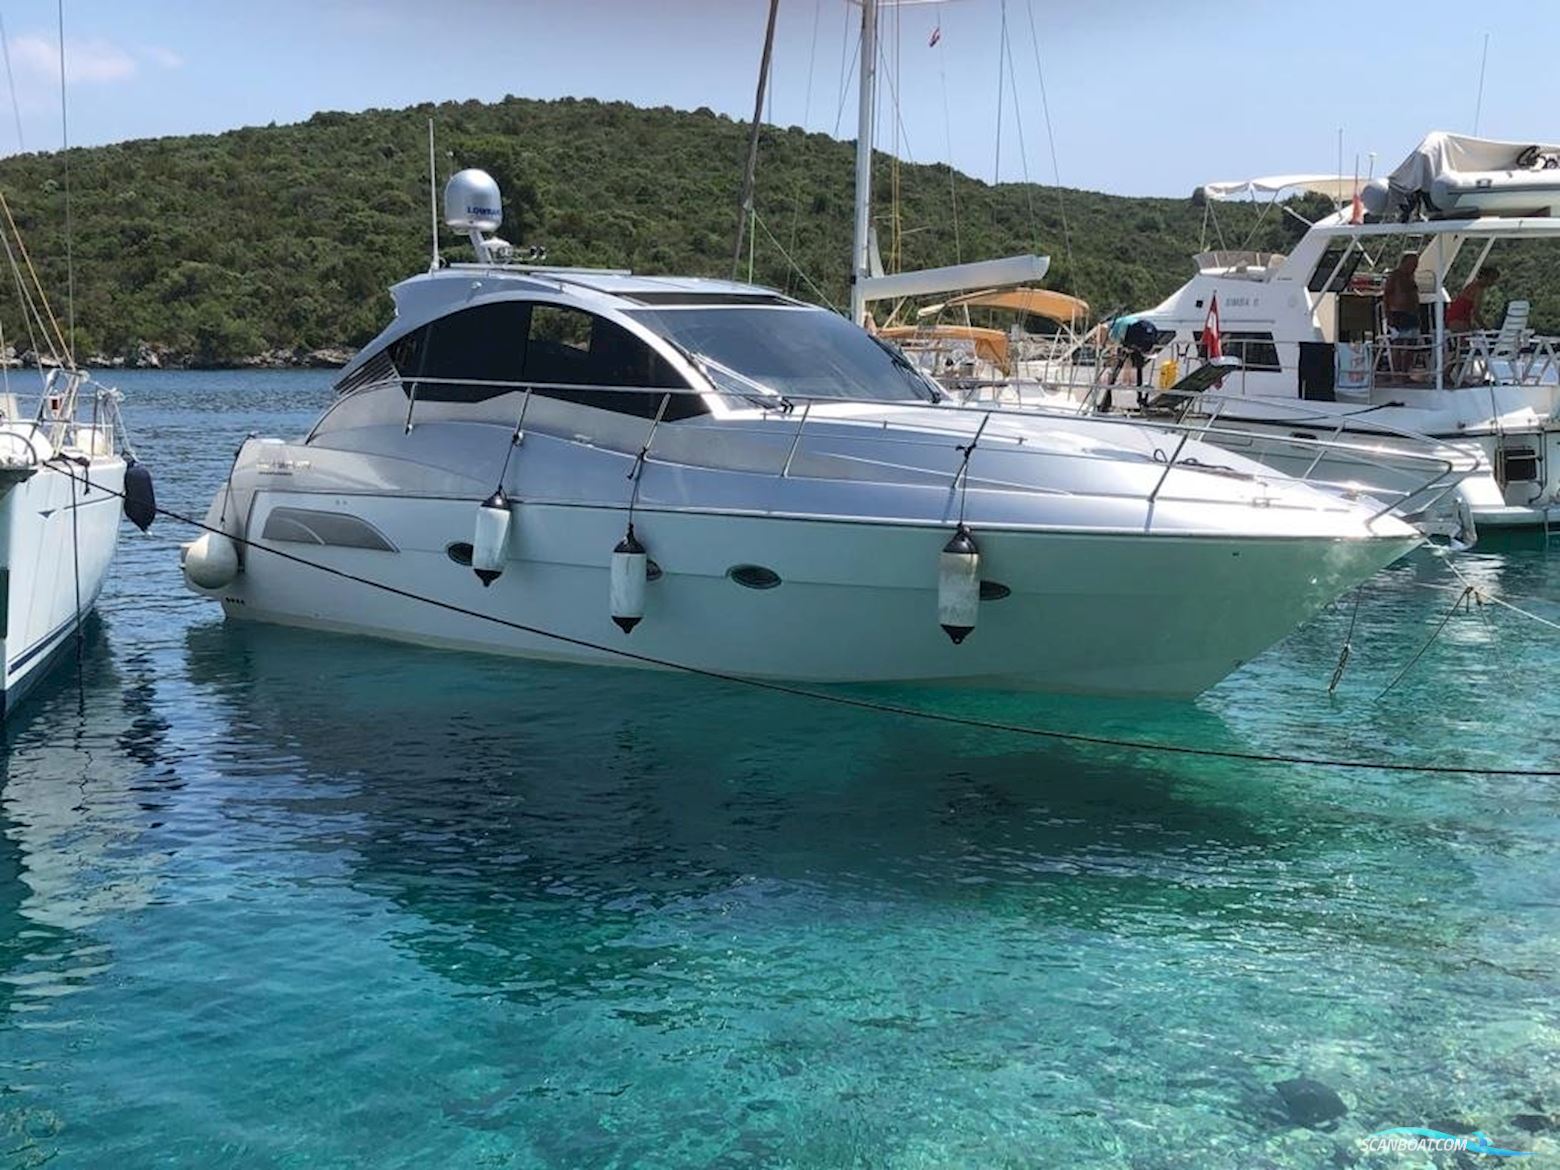 Mirakul 40 Hard Top - BJ. 2019 Motorboot 2019, mit Volvo Penta D4 motor, Kroatien